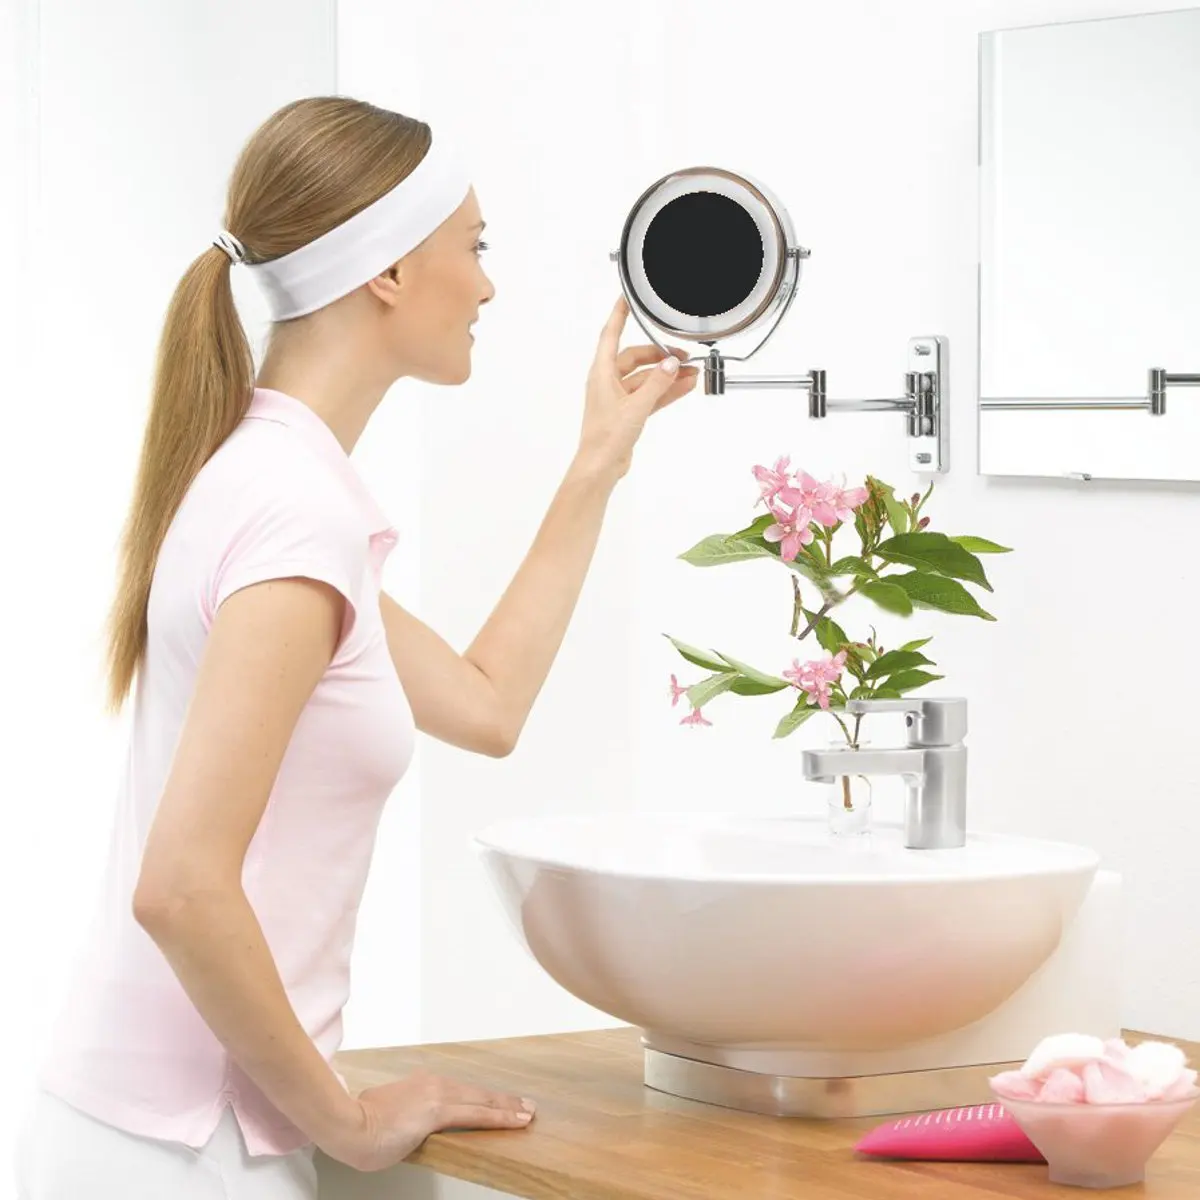 " Диаметр ванная комната бритья макияж зеркало с светодиодный светильник настенное крепление с двух сторон расширяемое вращающееся косметическое зеркало увеличительное 7X